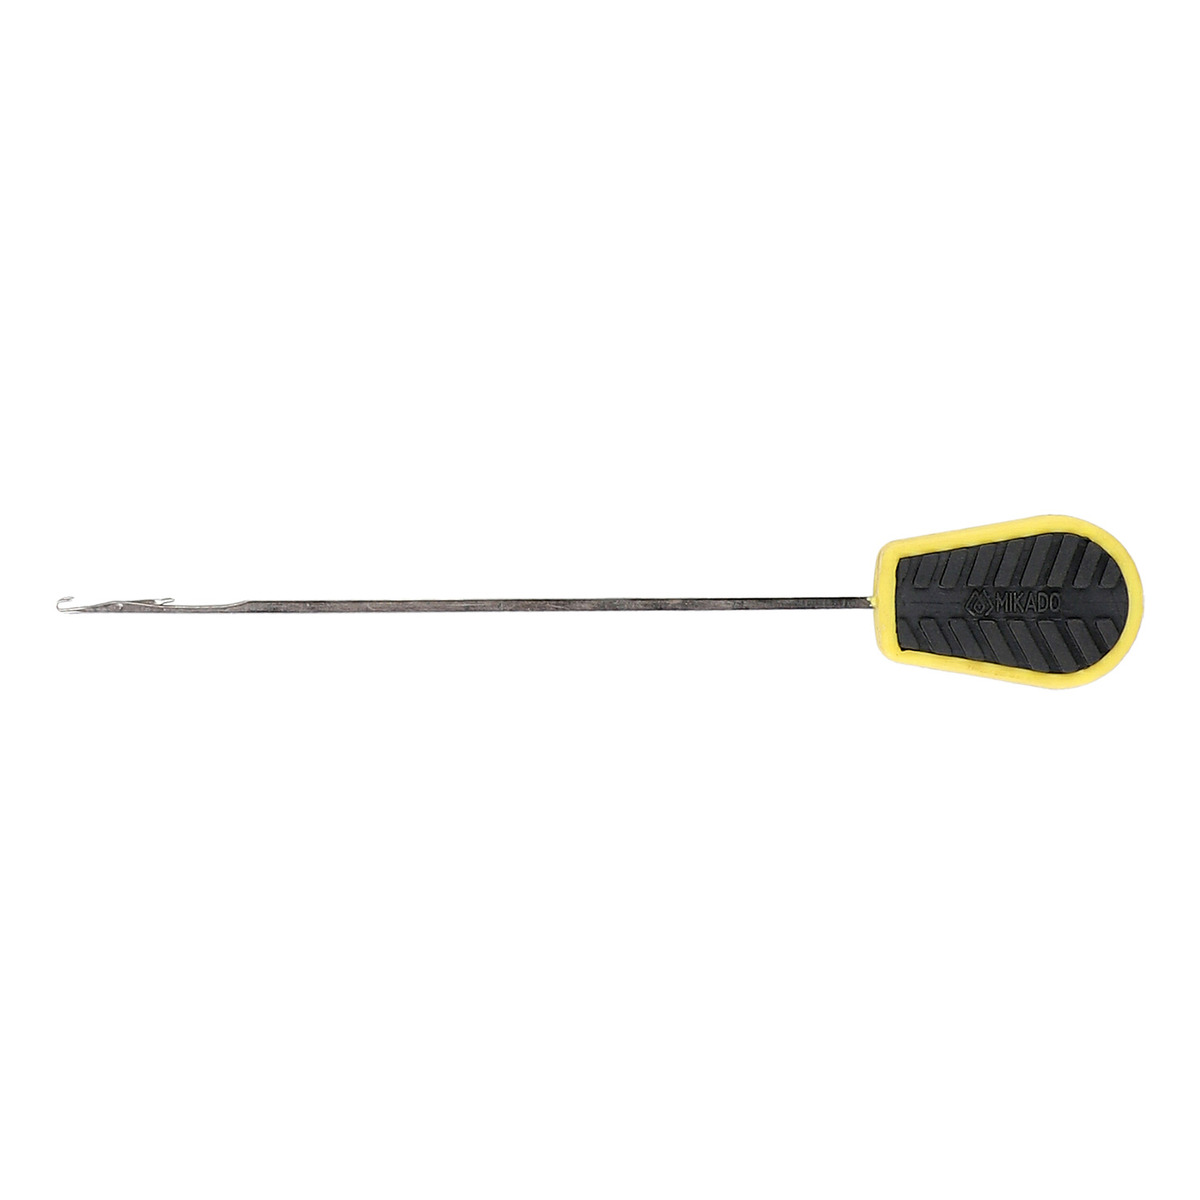 Mikado Baiting Needle - GATED NEEDLE FOR PVA